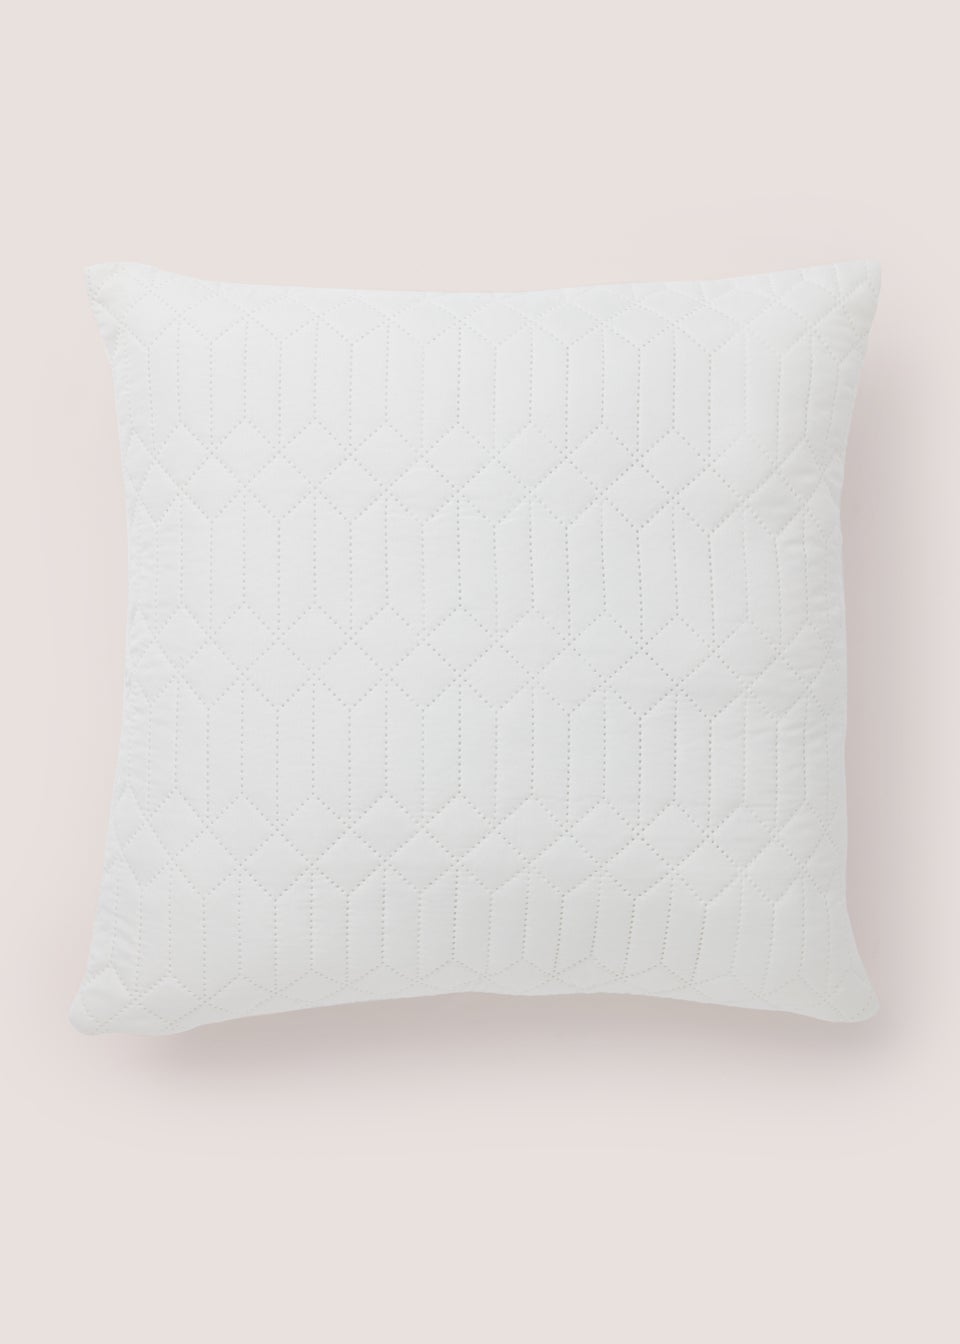 White Geo Pinsonic Cushion (40cm x 40cm)